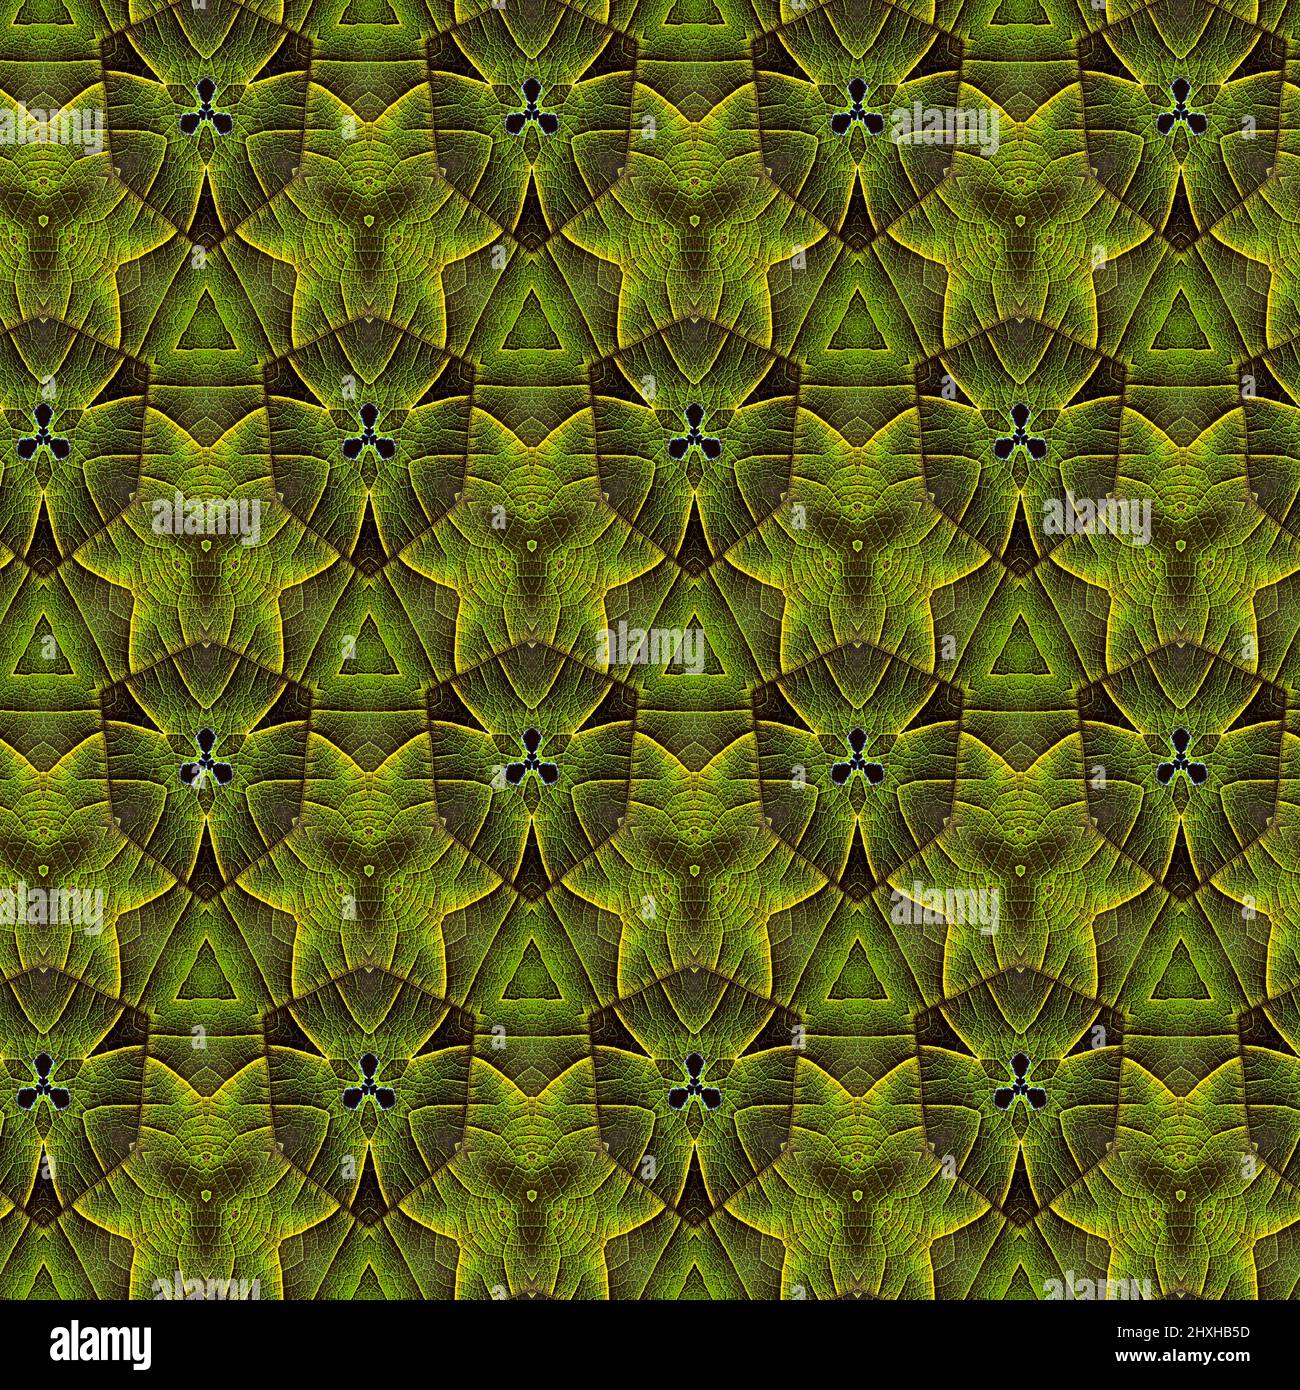 Formas interesantes crear un hermoso diseño simétrico, patrón que puede ser perfectamente en mosaico Foto de stock